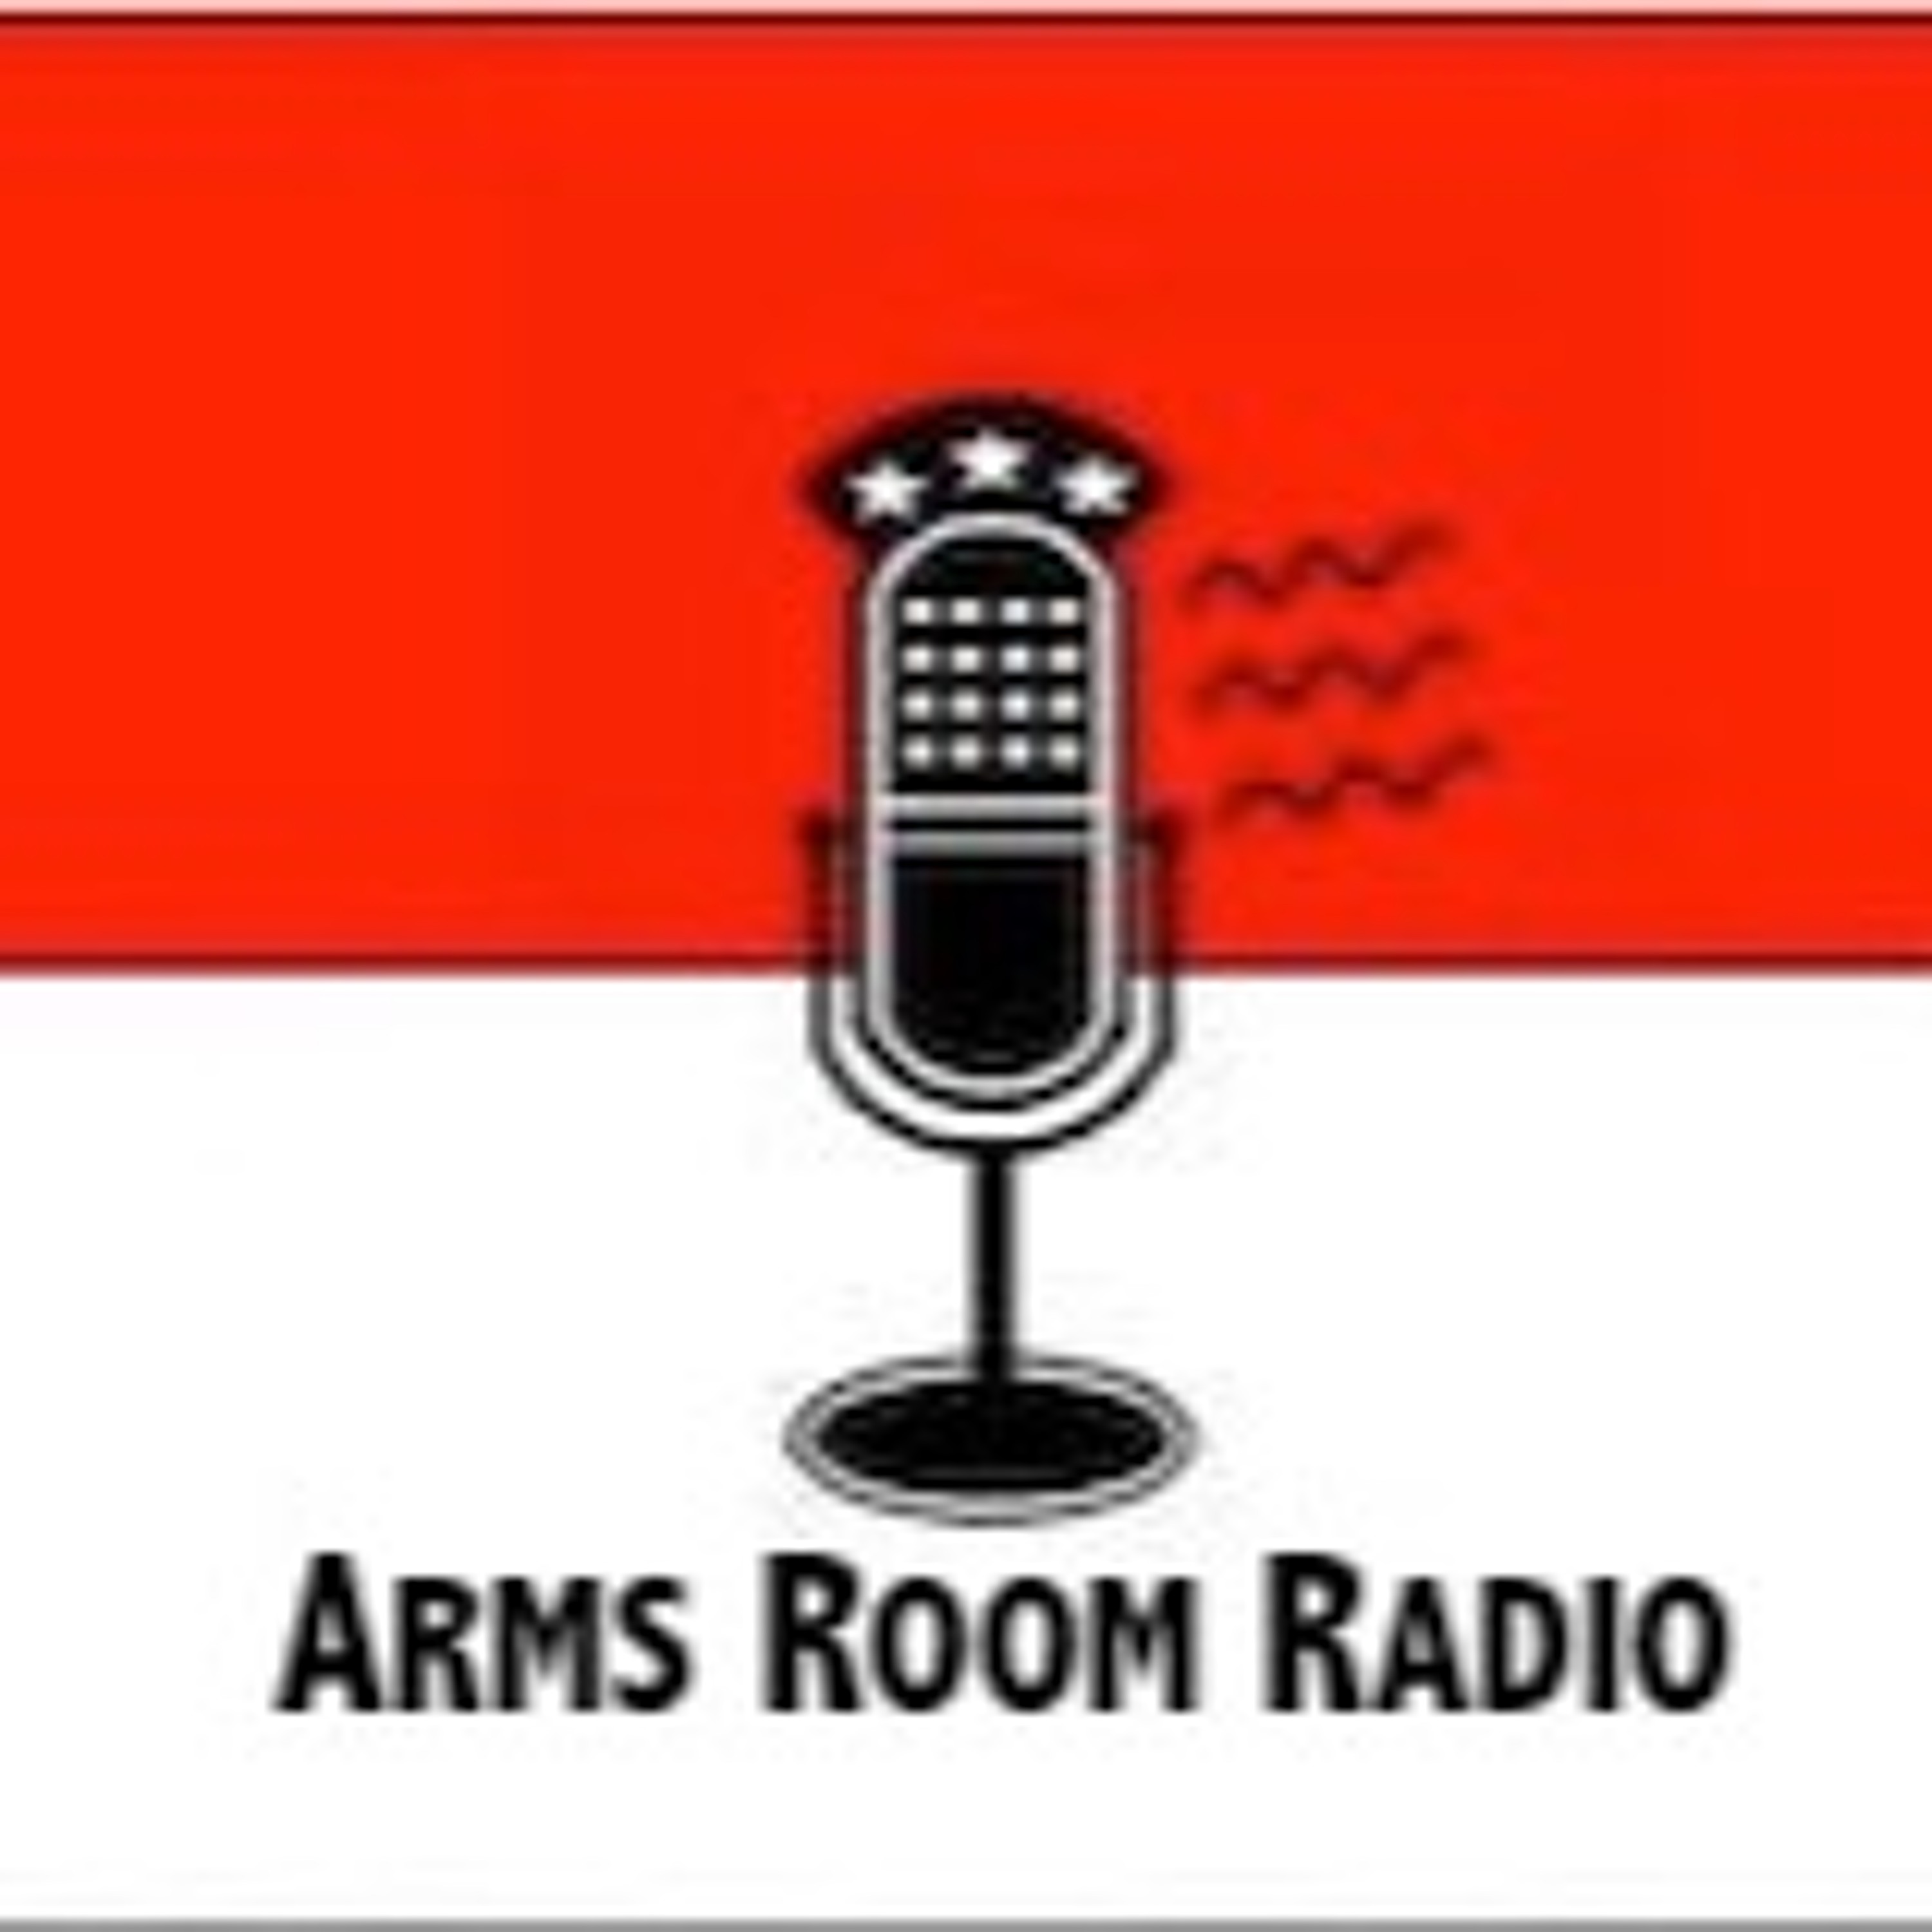 ArmsRoomRadio 04.17.21 Instructor Klint Macro, and Dr. John Edeen